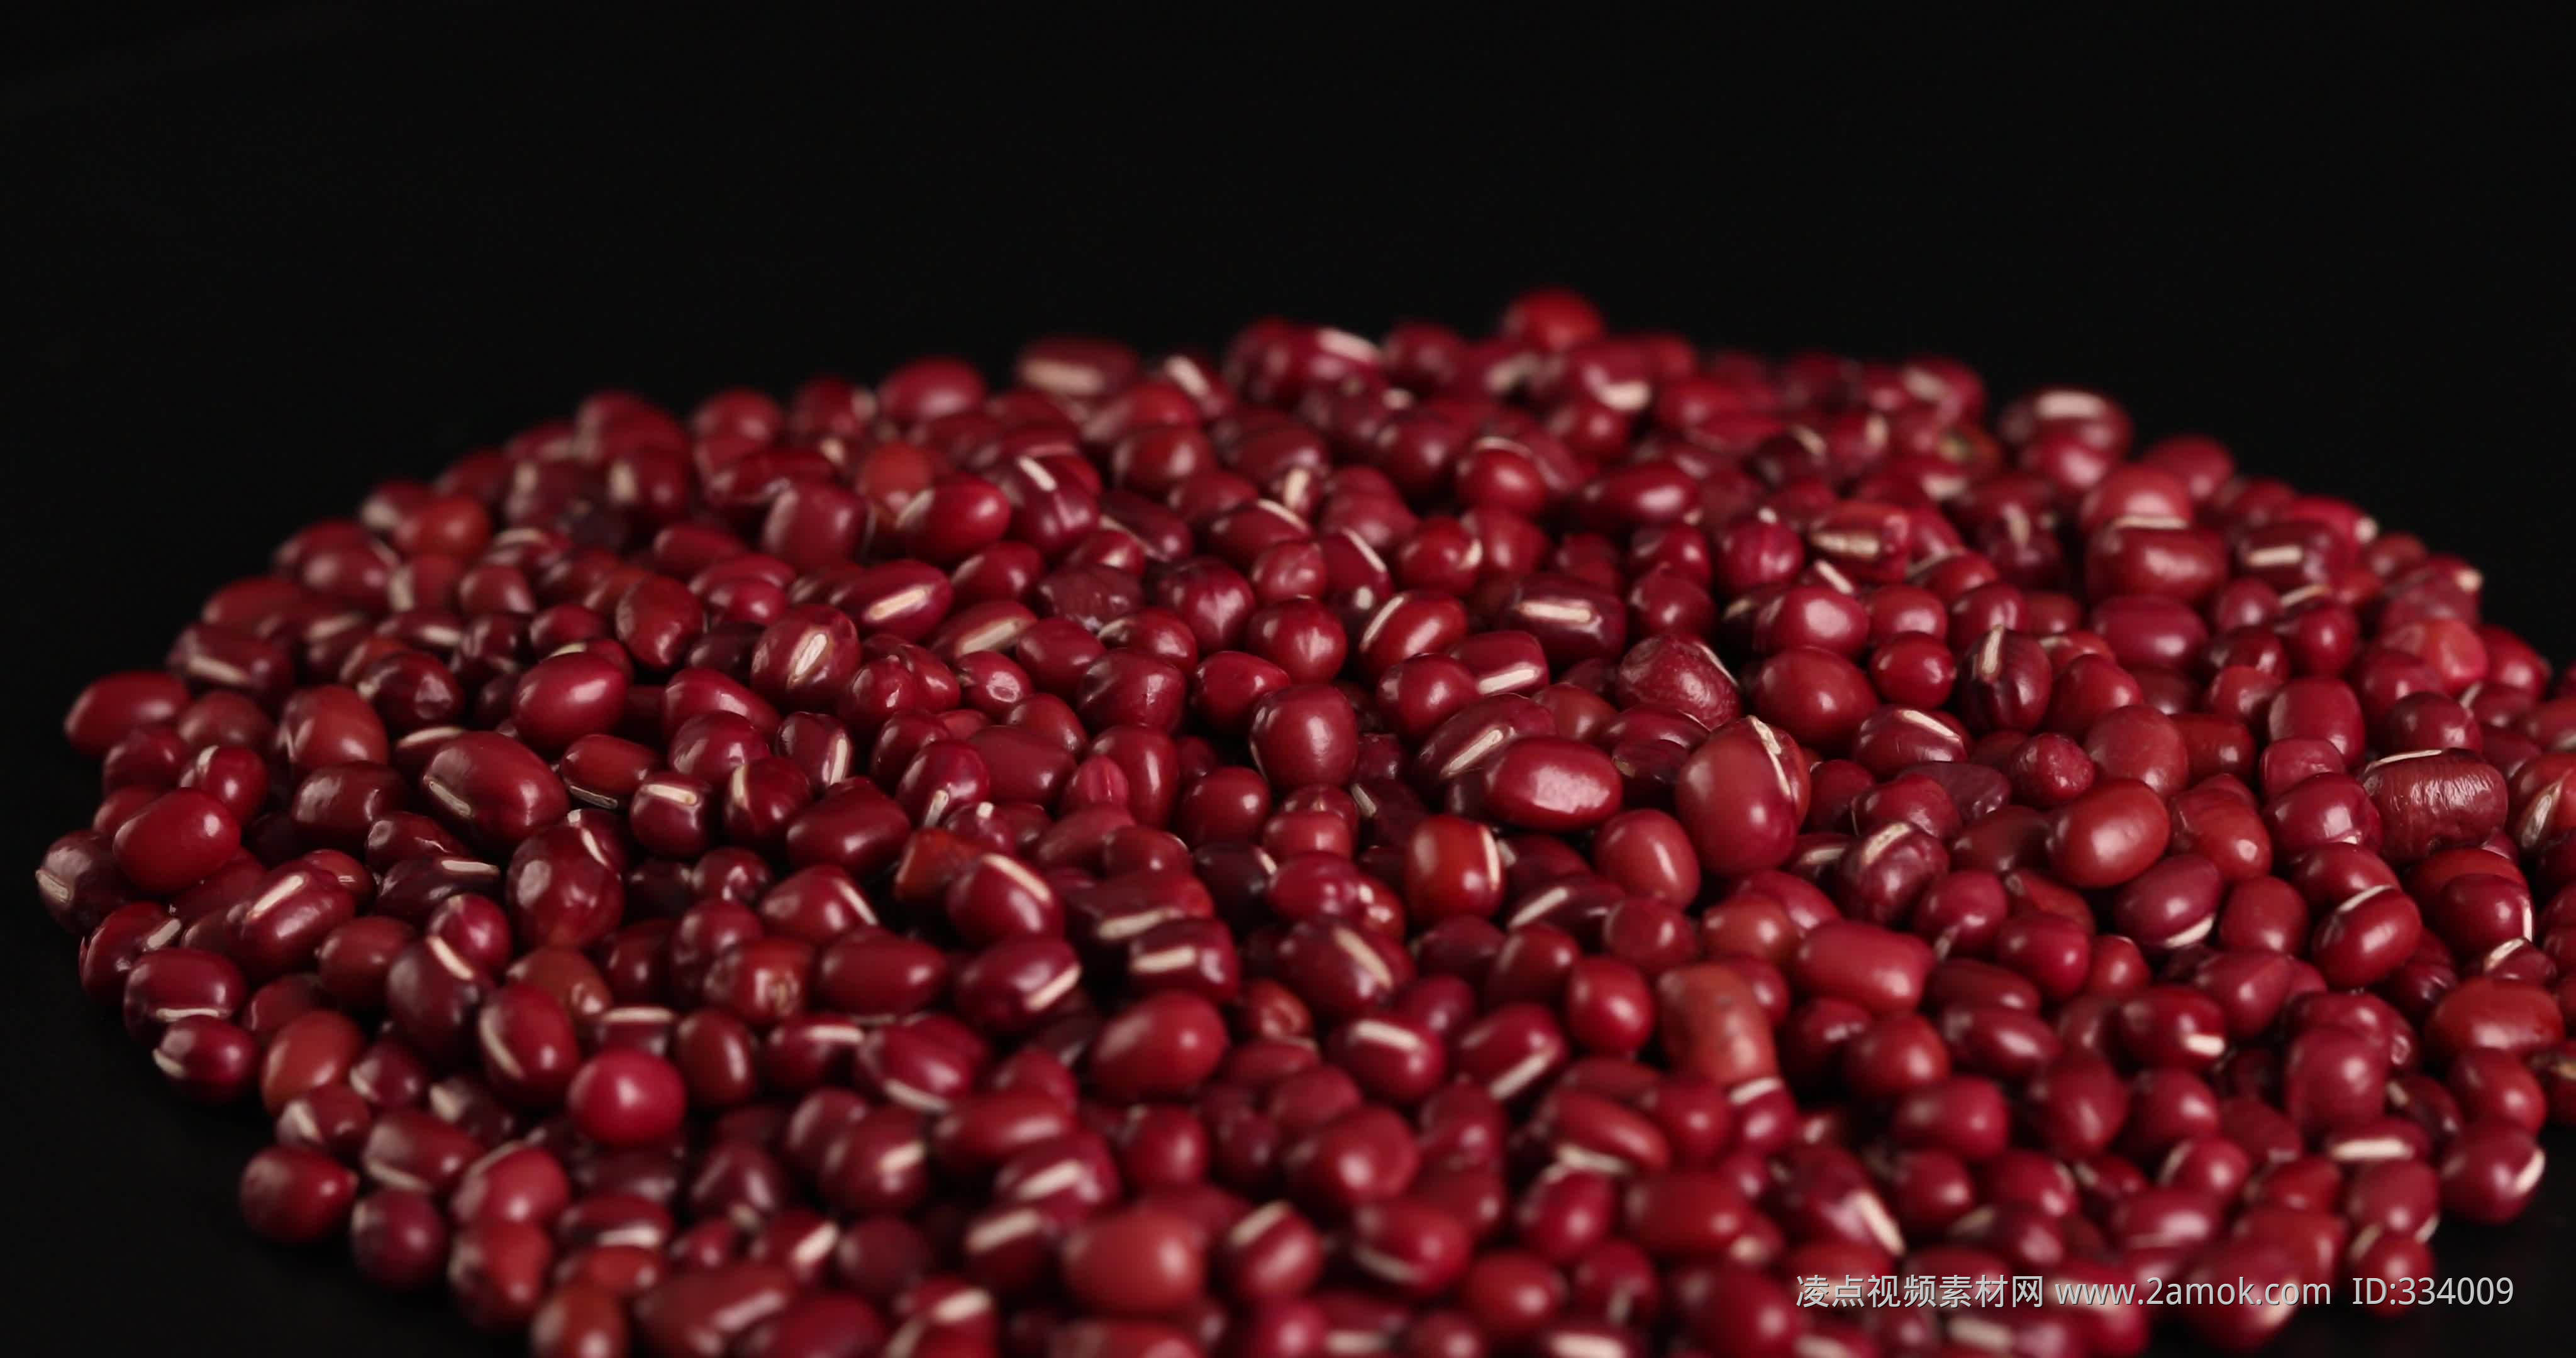 缅甸赤小豆主要种植区域及出口情况 - 知乎